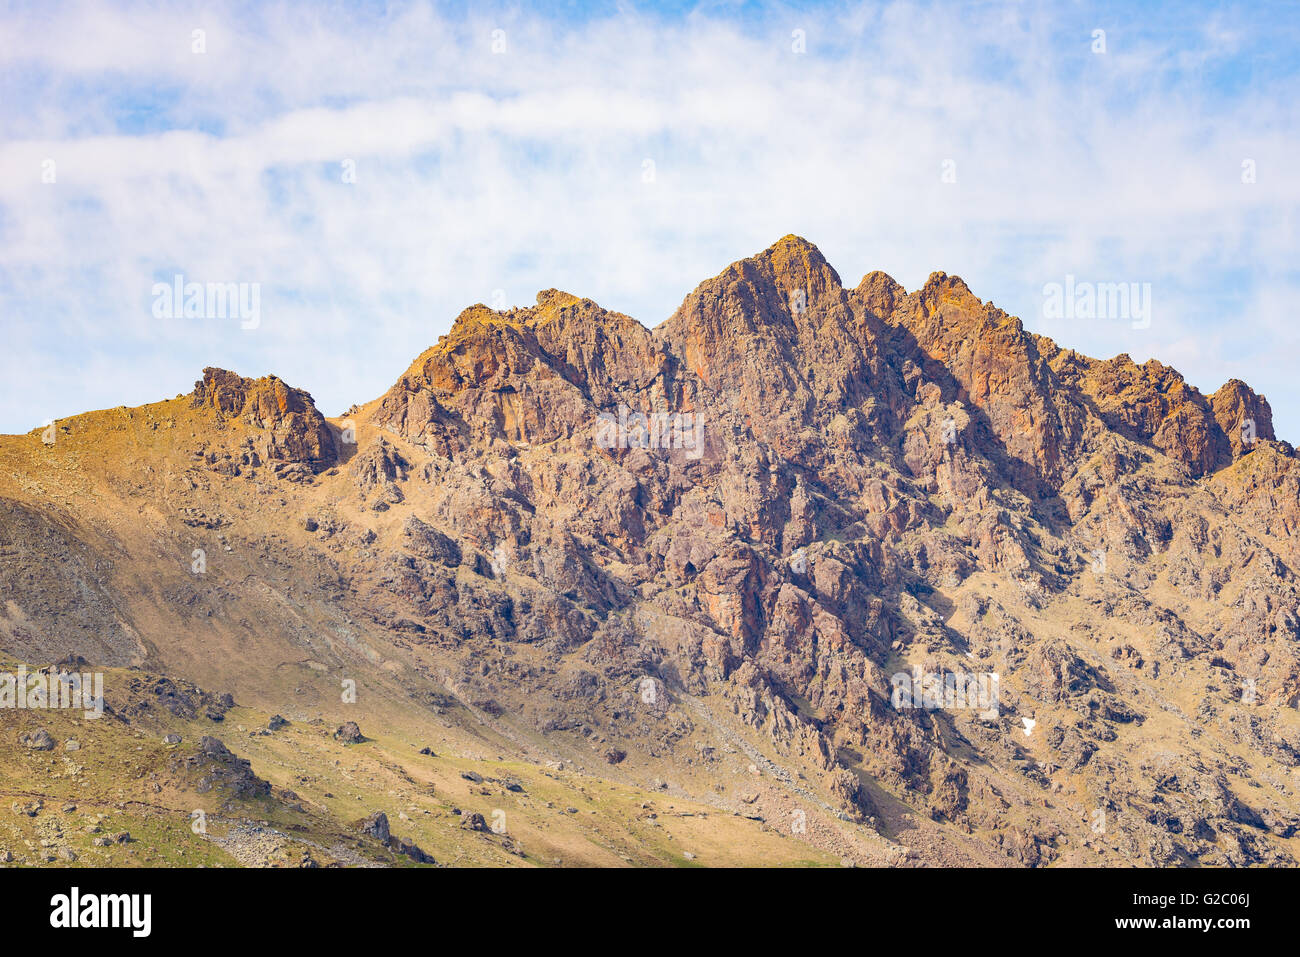 Le téléobjectif vue détaillée de rocky mountain peak et jagged ridge. Paysage terrain extrême à haute altitude sur les Alpes, en Italie. Banque D'Images